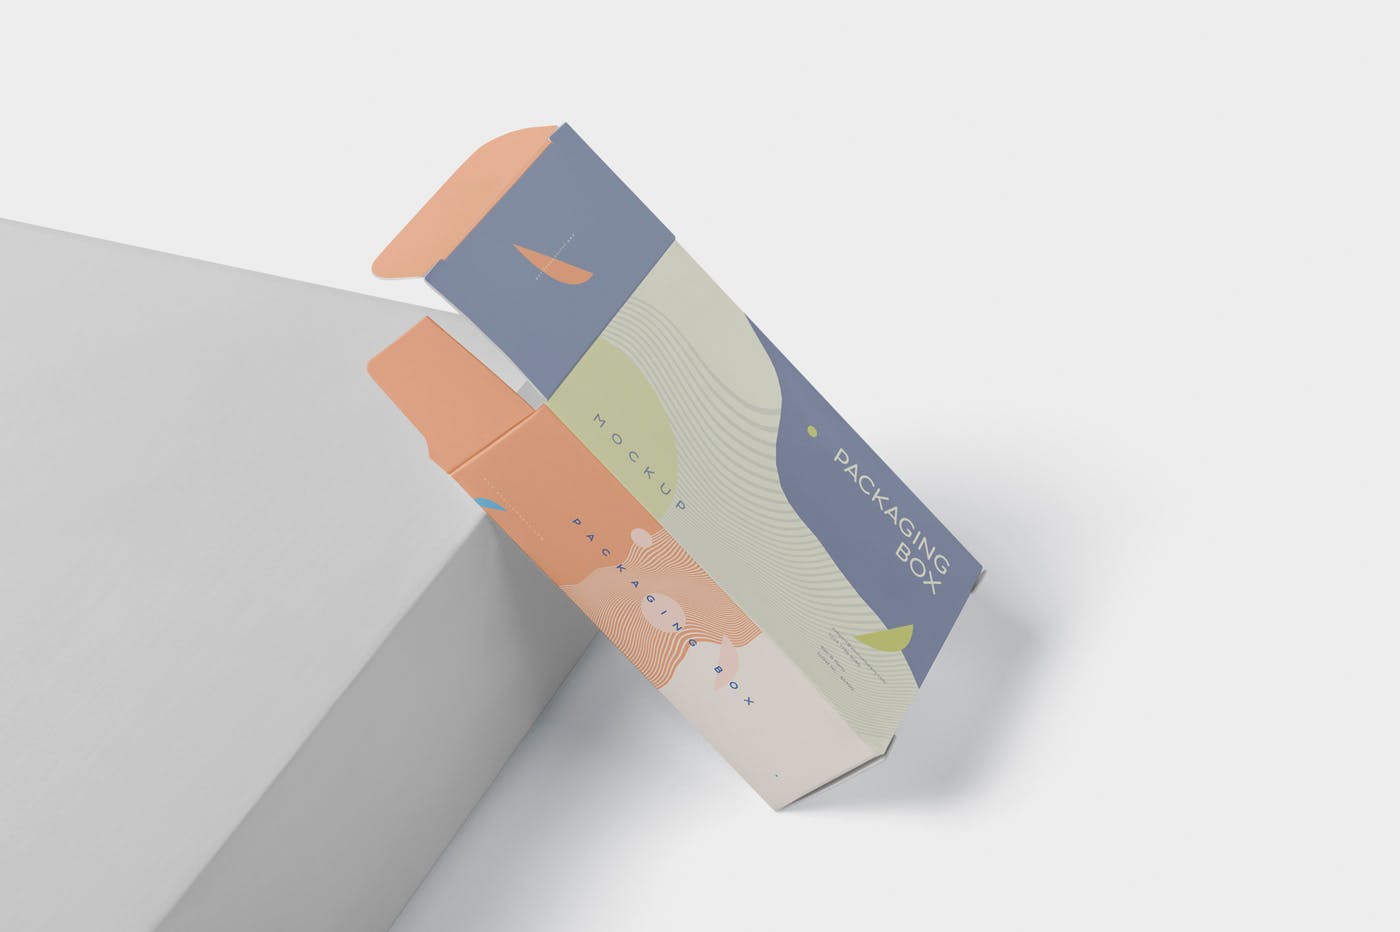 扁平矩形产品包装盒效果图大洋岛精选 Package Box Mockup – Slim Rectangle Shape插图2